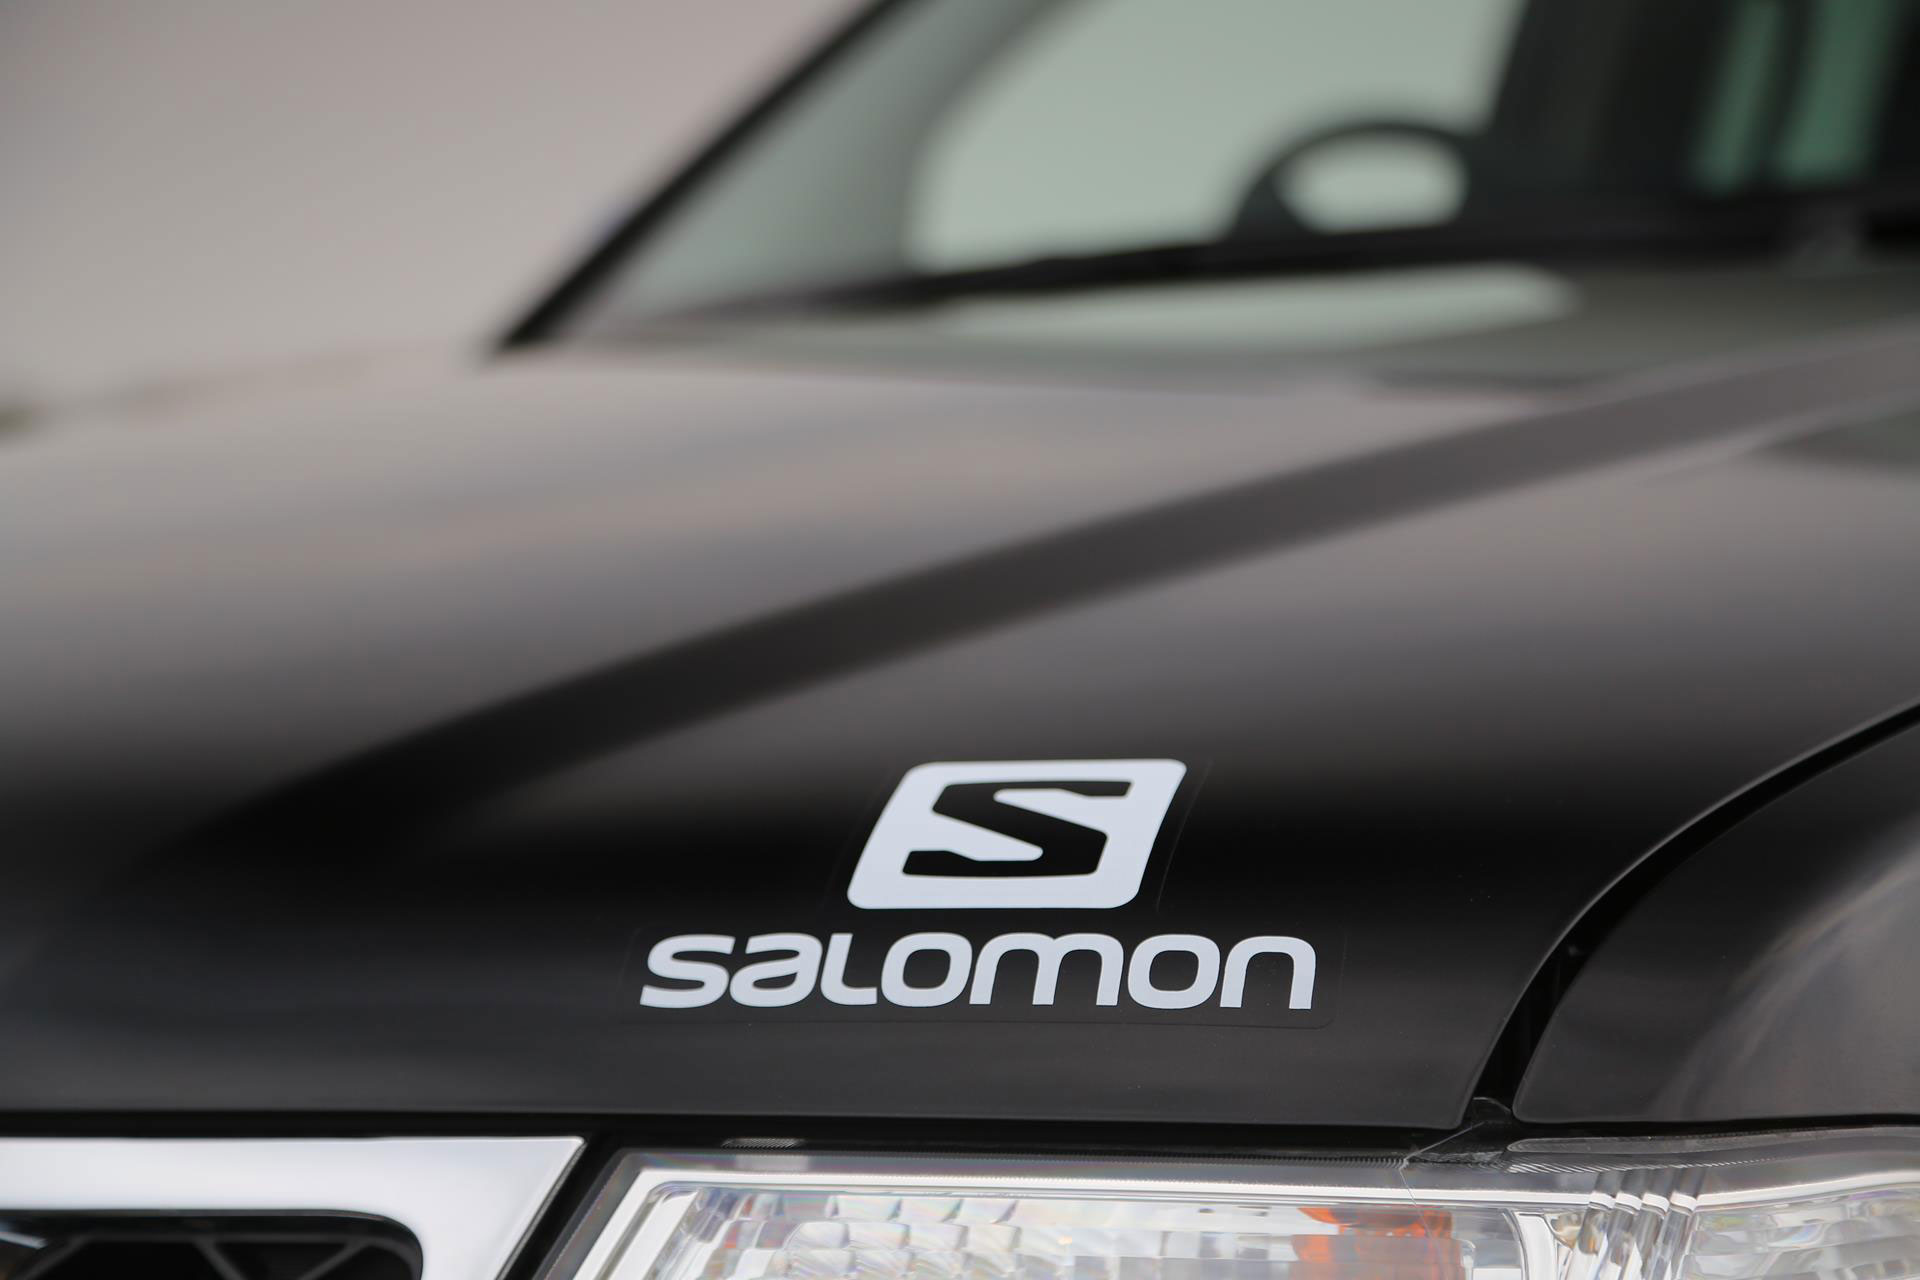 2015 Nissan Navara Salomon